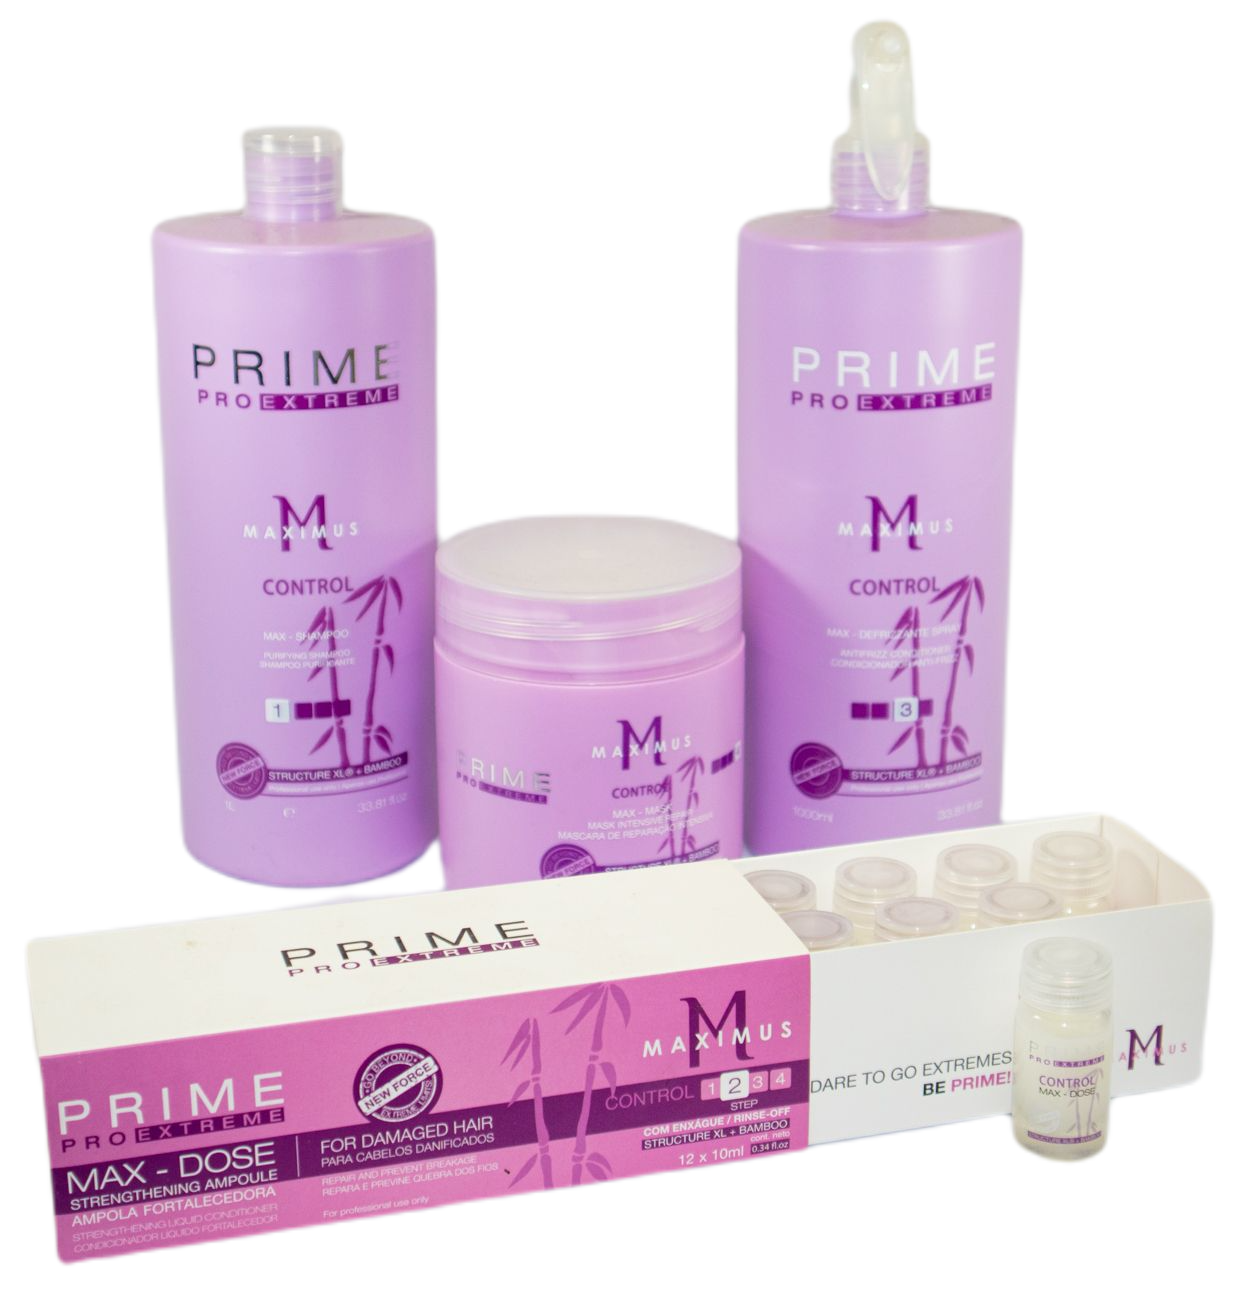 Prime Pro Extreme Brazilian Keratin Treatment Maximus Control Hair Treatment Kit 4 Products - Prime Pro